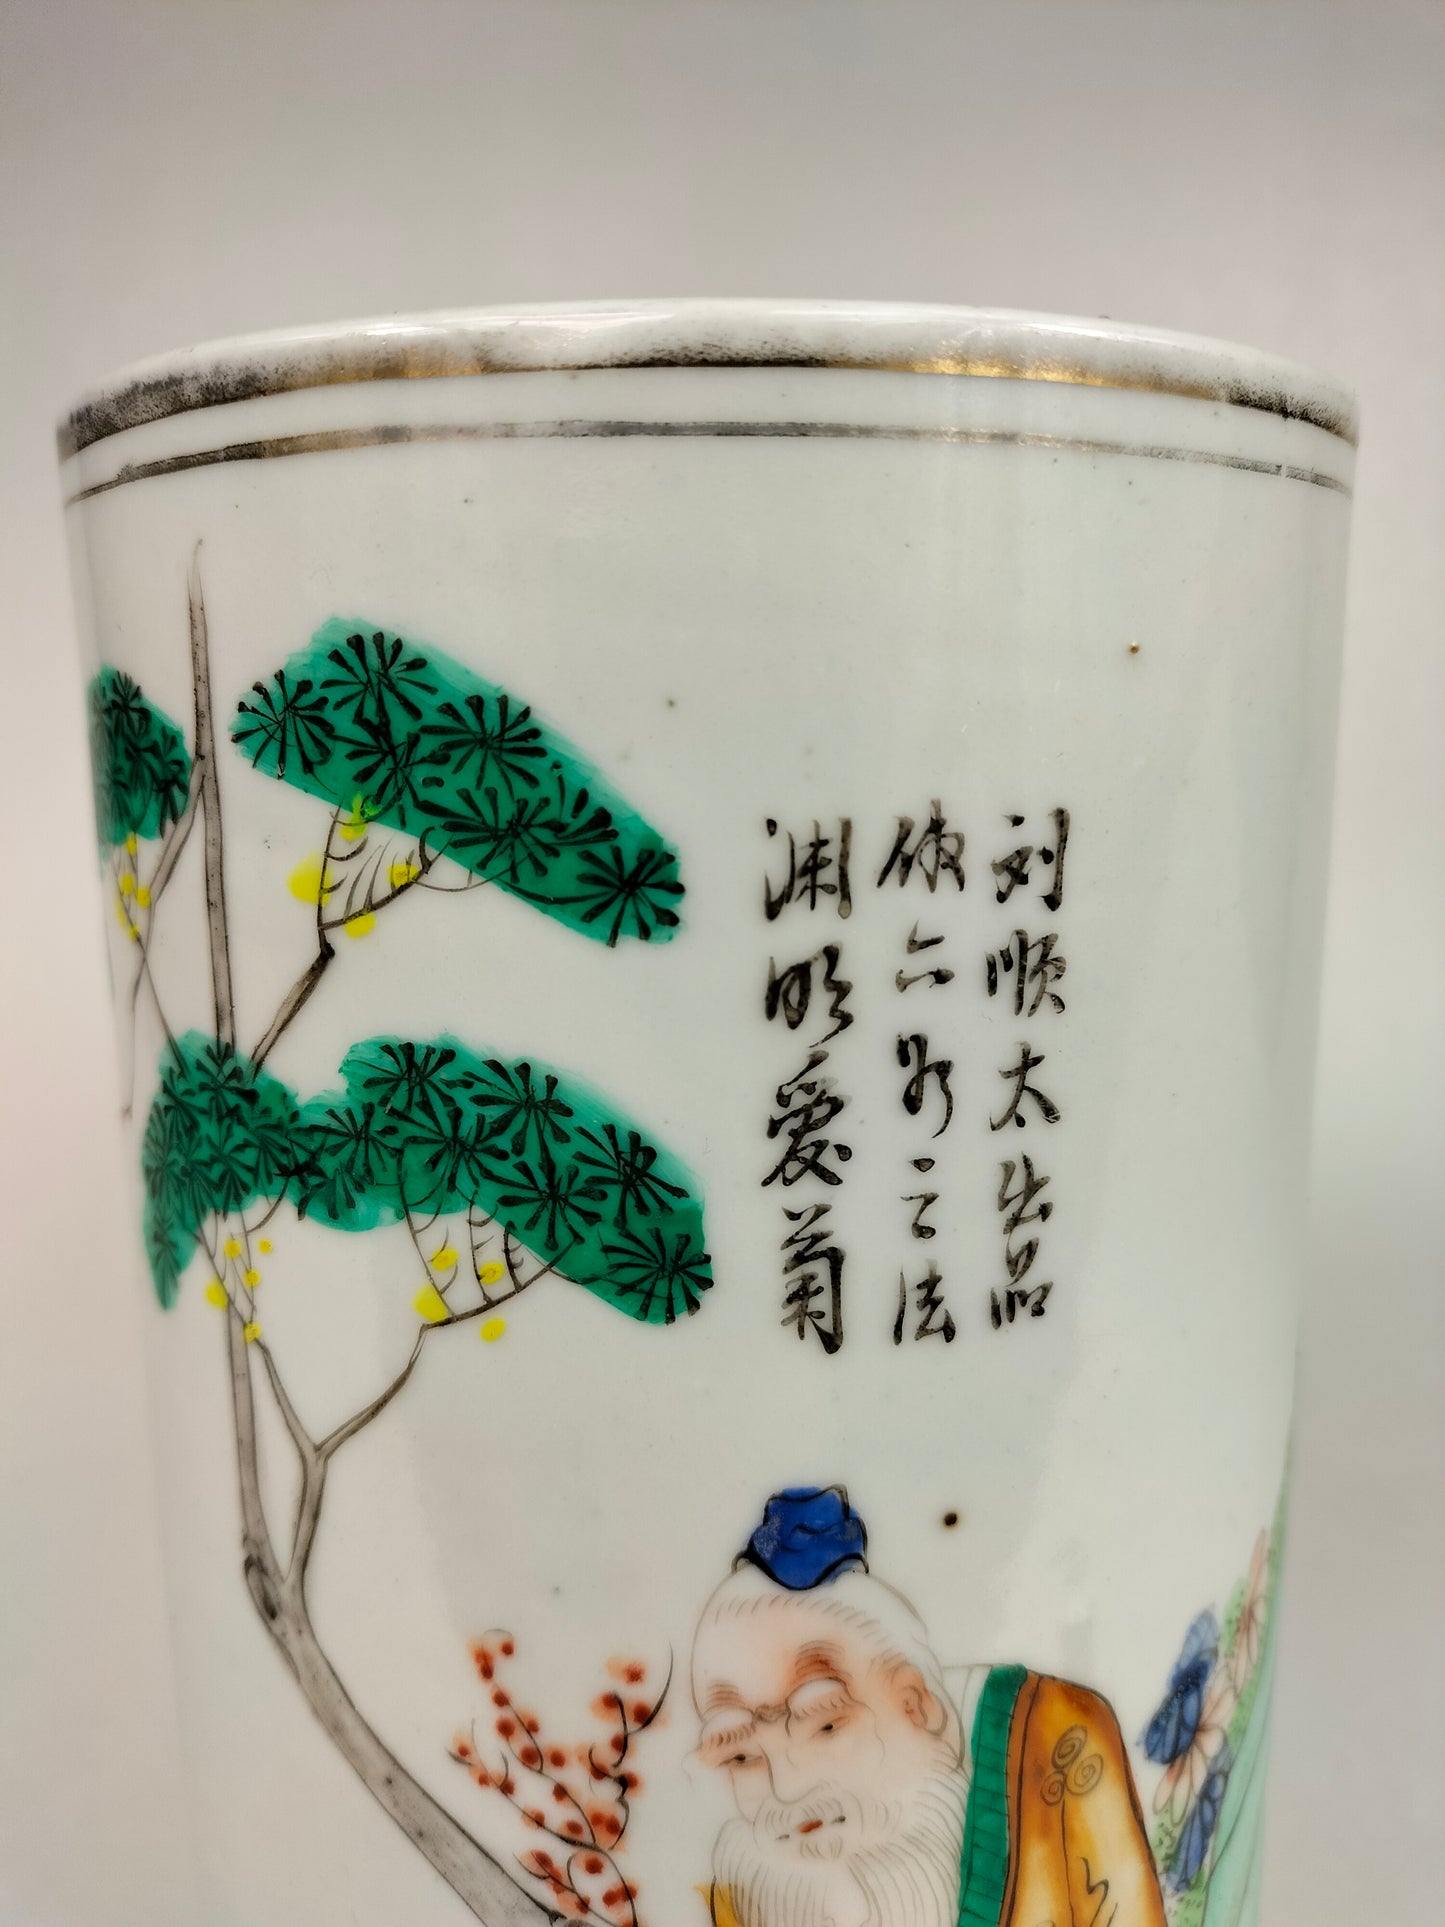 Ancien vase rouleau chinois à décor de sauge et d'enfants // Période République (1912-1949)